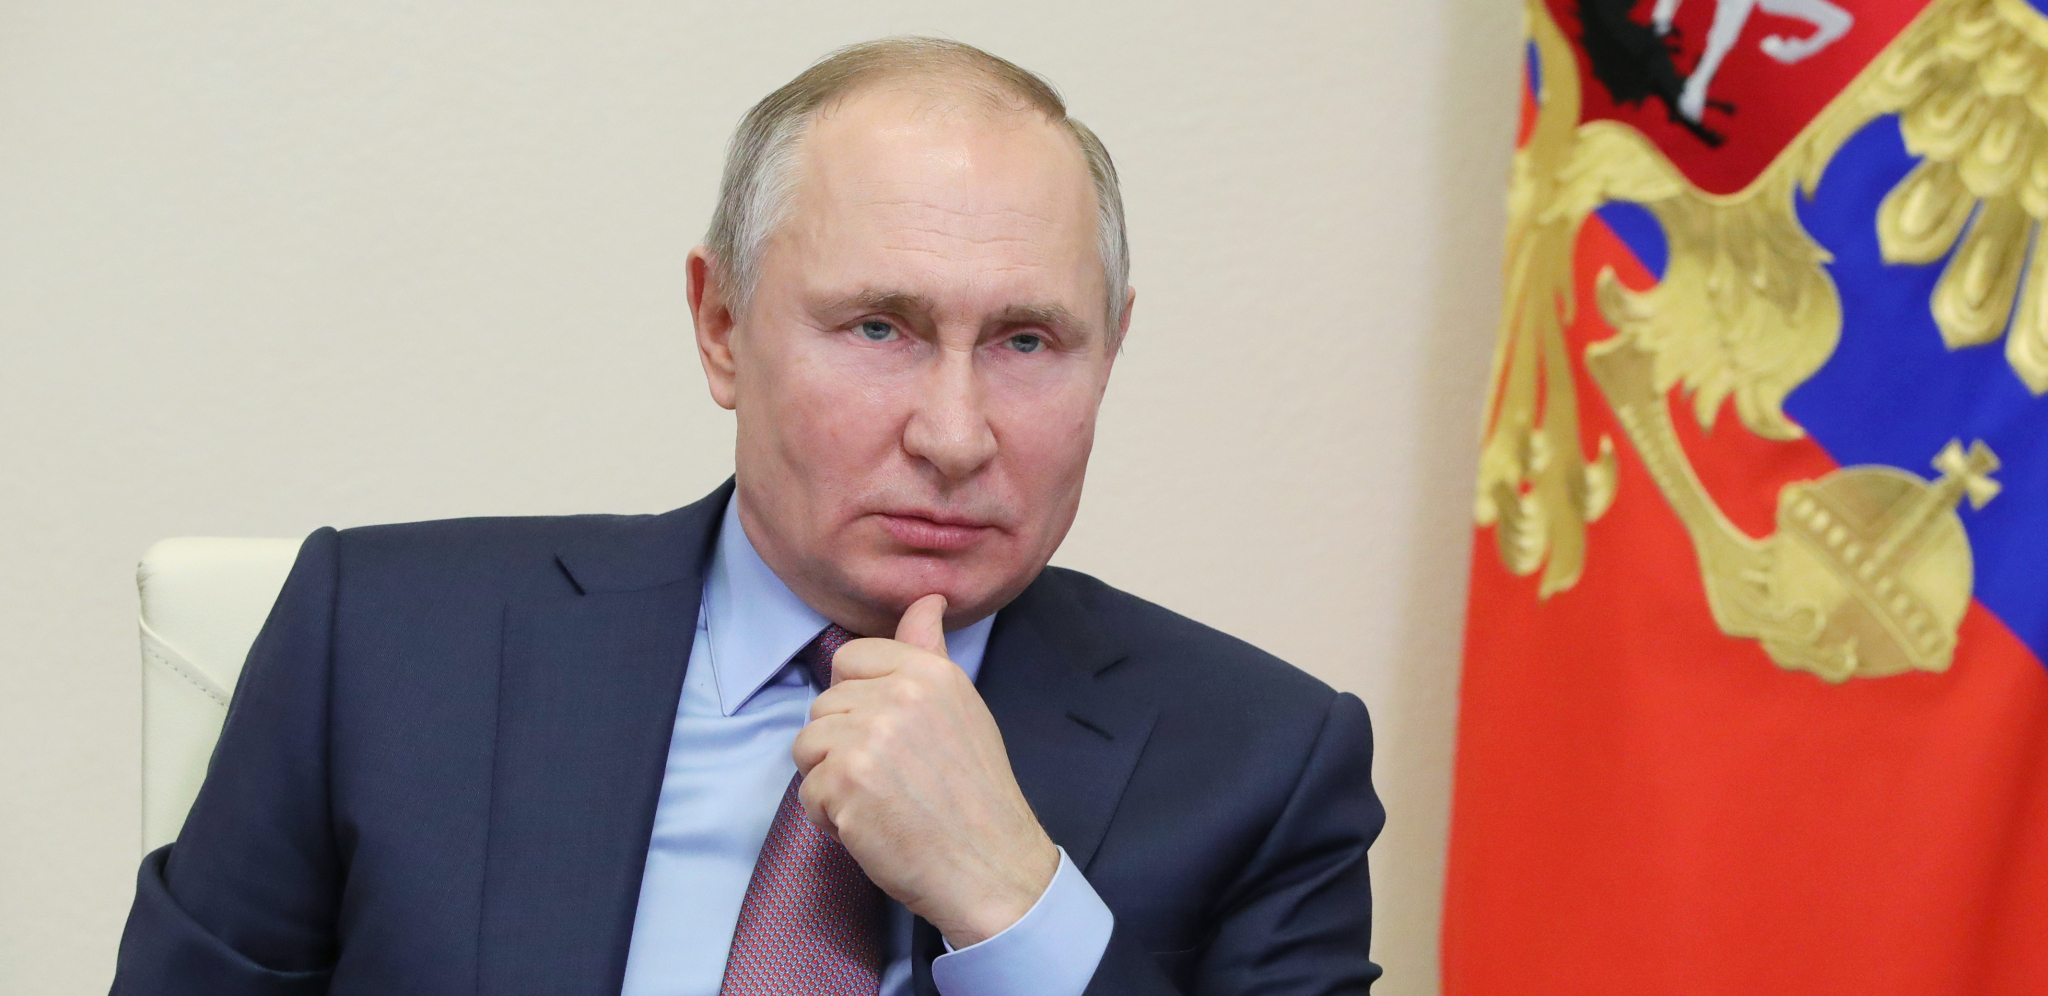 5 OPCIJA NA STOLU! Šta će Putin da uradio posle naleta Ukrajinaca? Obaveštajci tvrde da vide sve ruske karte!